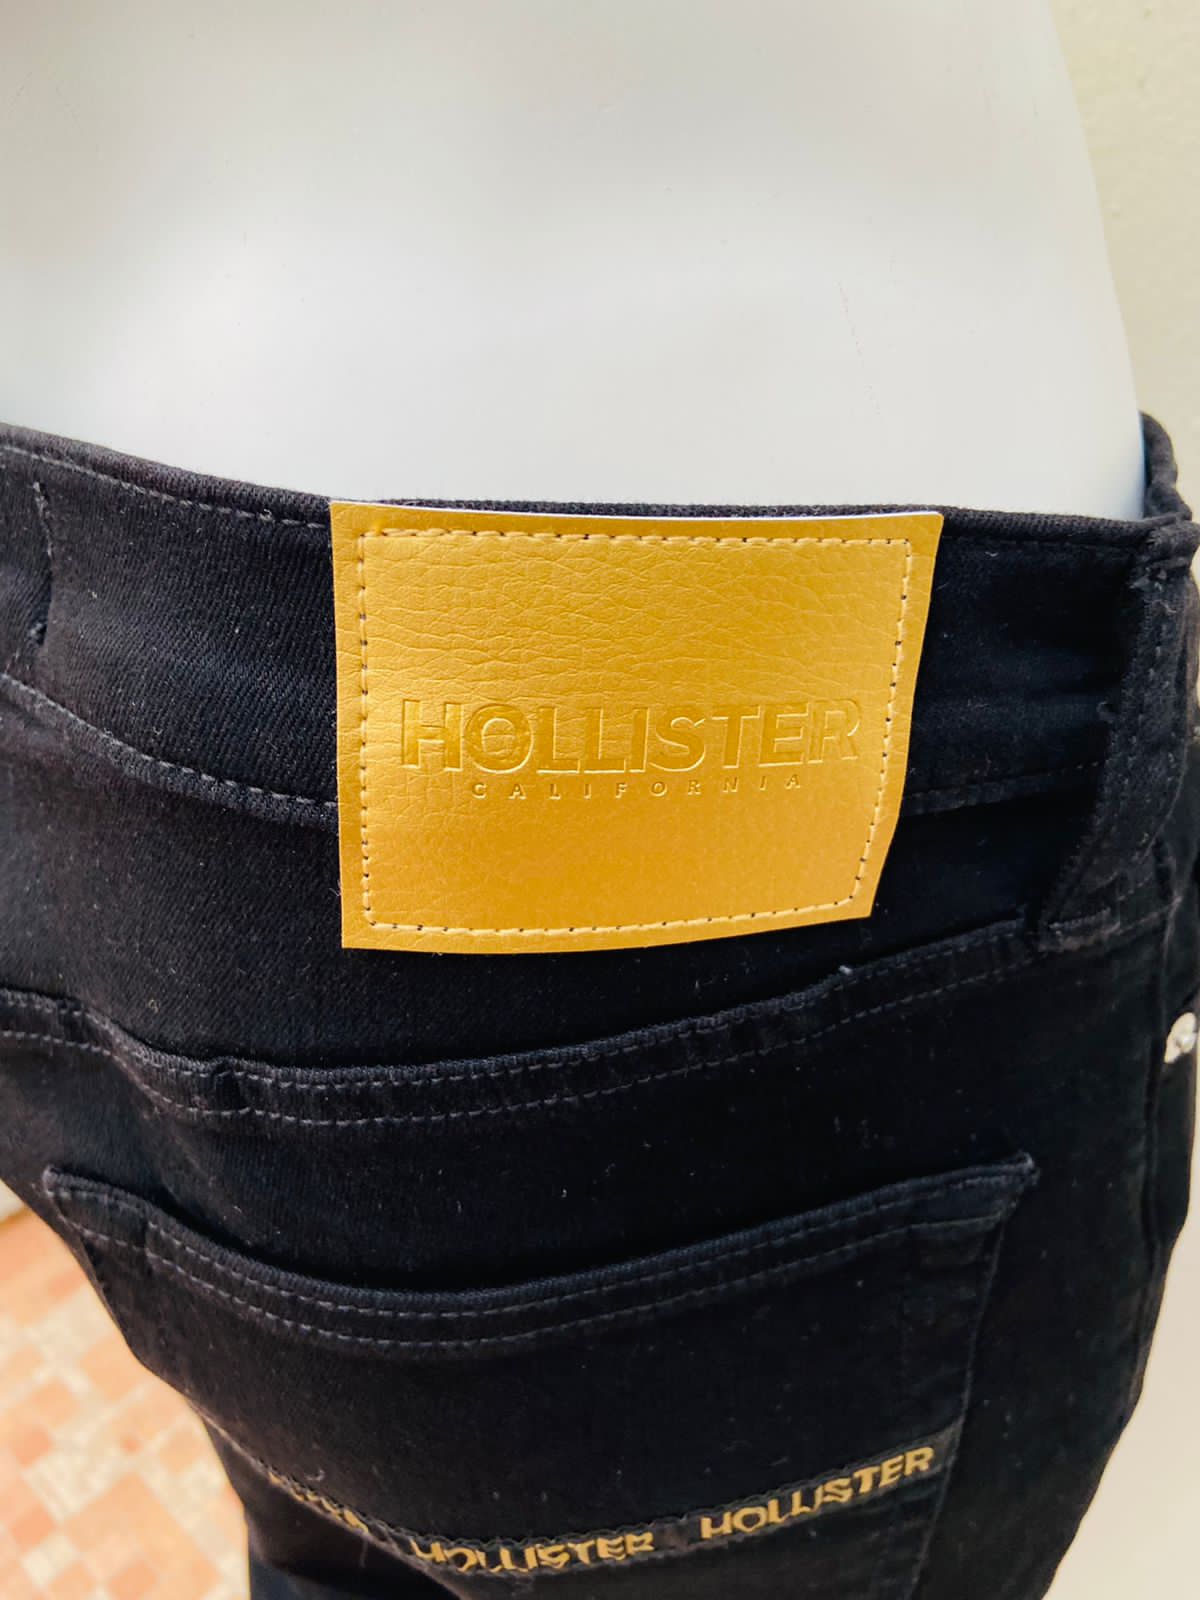 Pantalón Hollister original, negro con rasgado en las rodillas, letras HOLLISTER en color dorado en los bolsillos